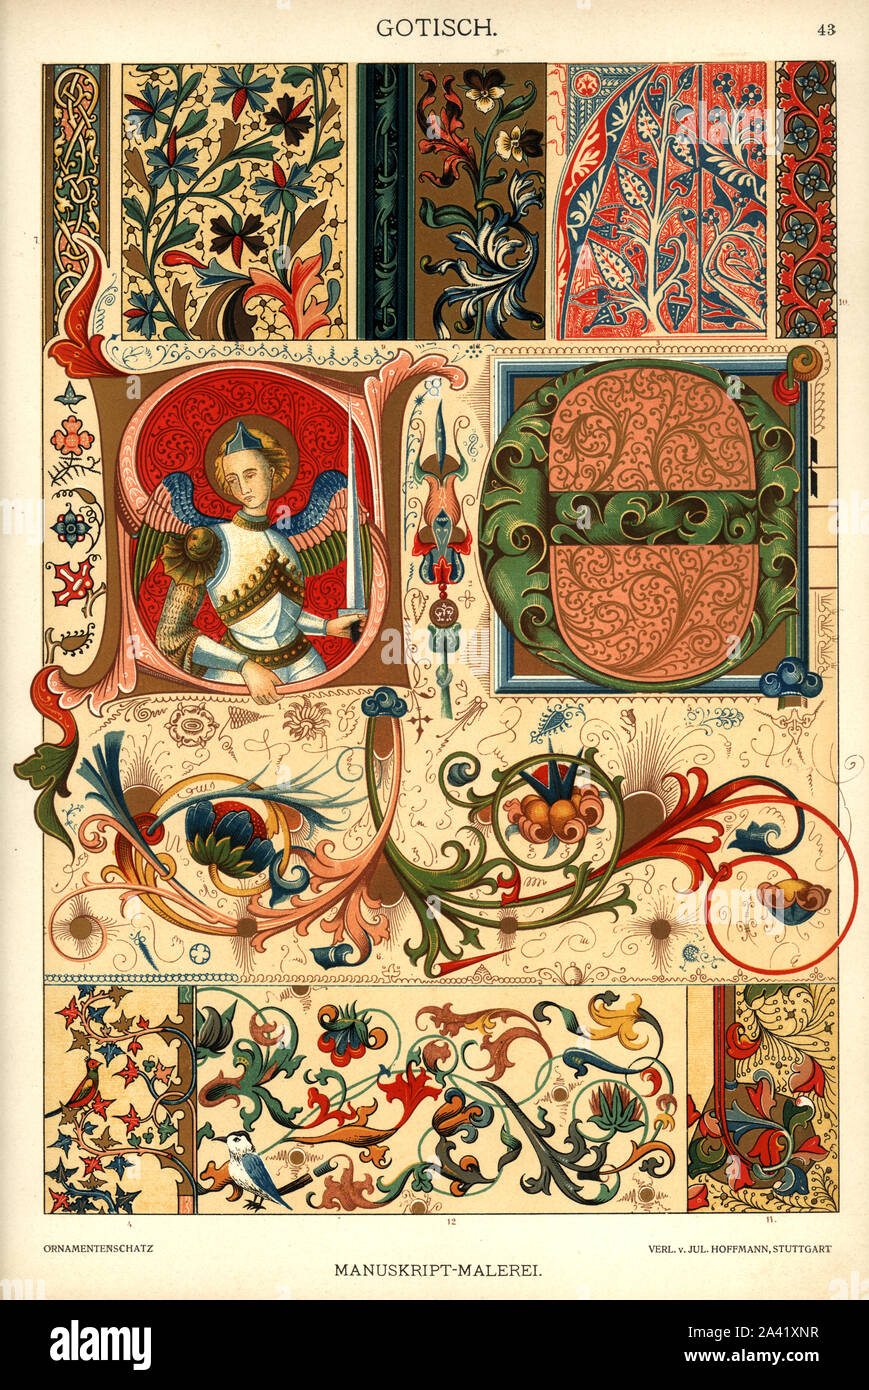 Peinture manuscrite gothique, Gothische Manuskript Malerei, Dolmetsch.Set mit 9 gothischen Symbolen, Mustern und Bordüren aus der Manusktriptmalerei. Banque D'Images